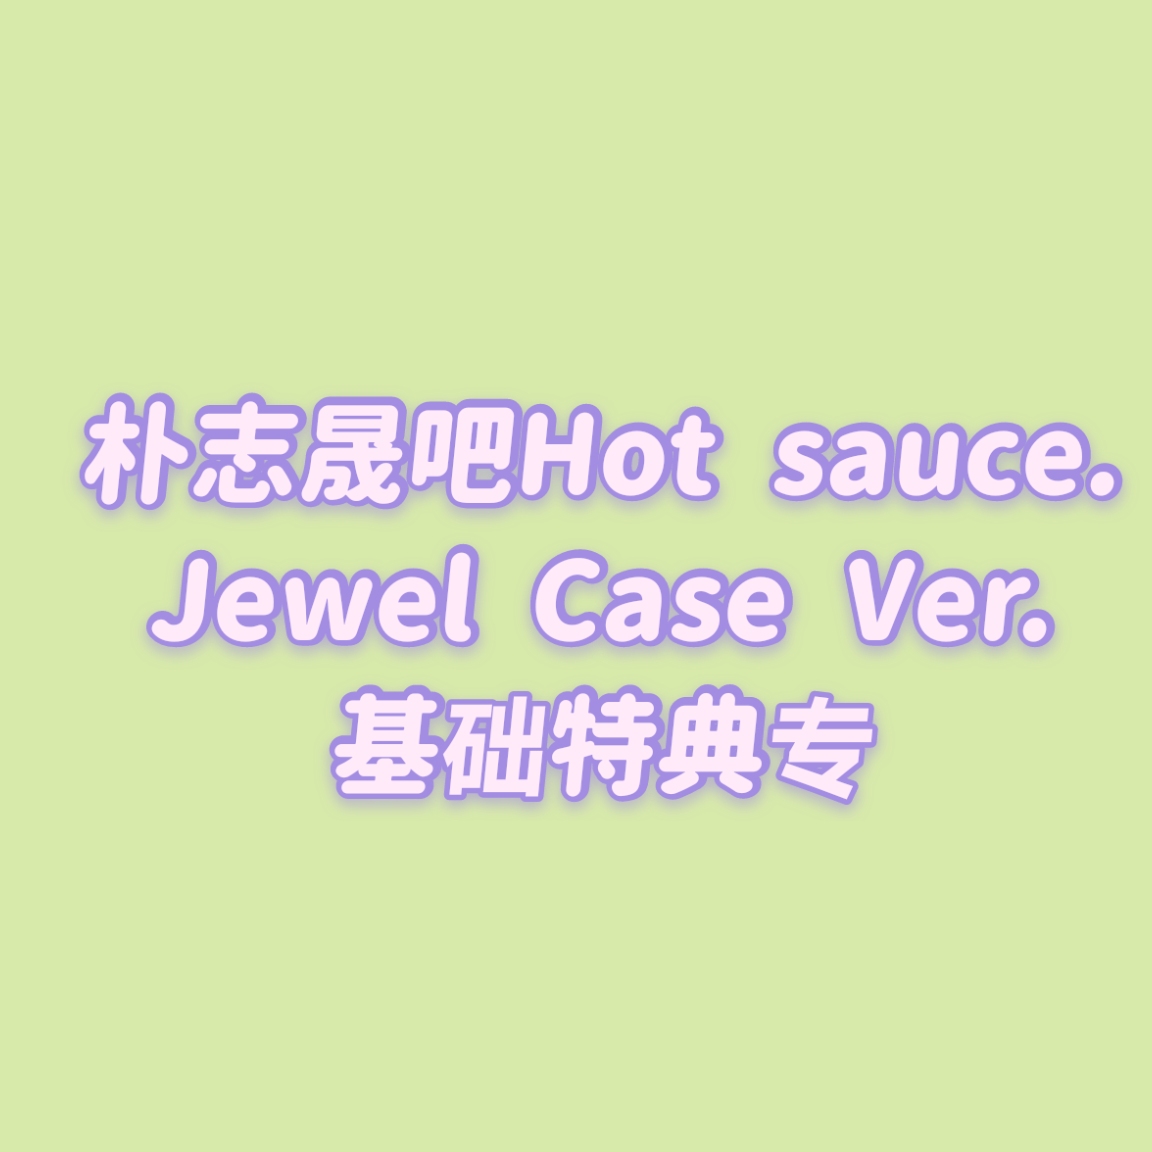 [全款 基础特典包邮专] [买多张发不同版本] NCT DREAM - Album Vol.1 [맛 (Hot Sauce)] (Jewel Case Ver.) (随机版本)_朴志晟吧_ParkJiSungBar